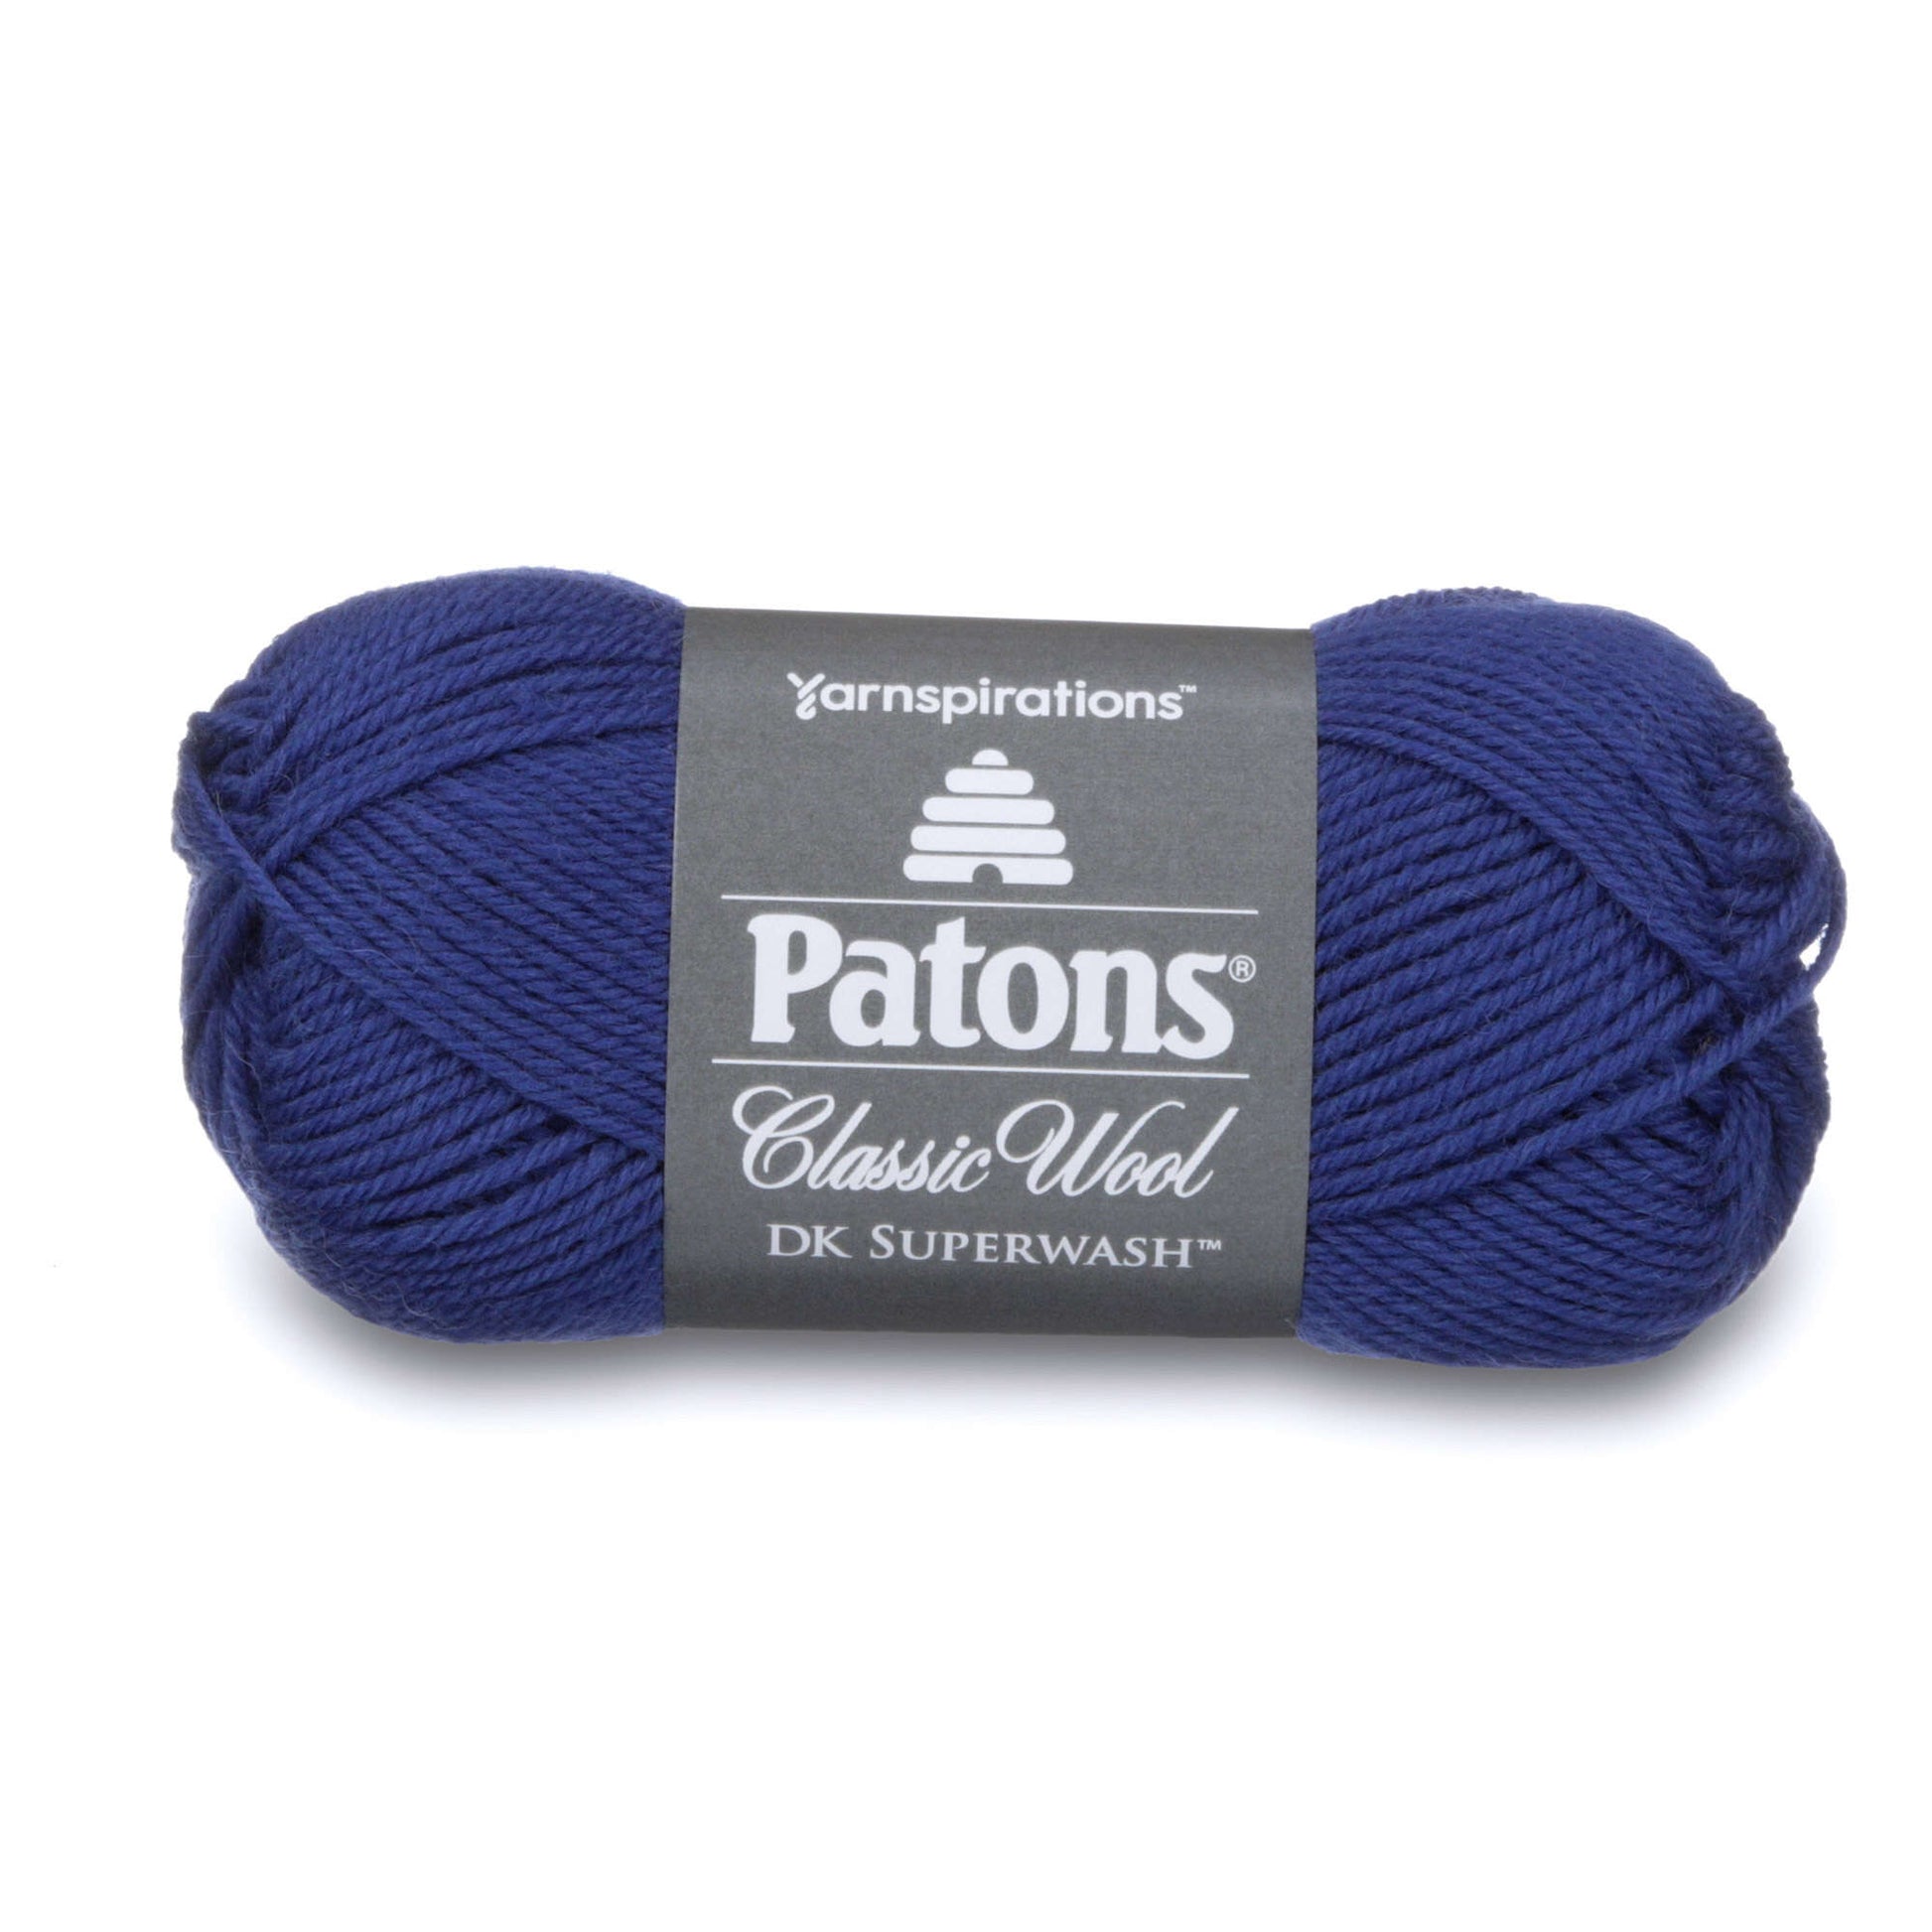 Patons Classic Wool DK Superwash Yarn - Discontinued Shades Royal Blue